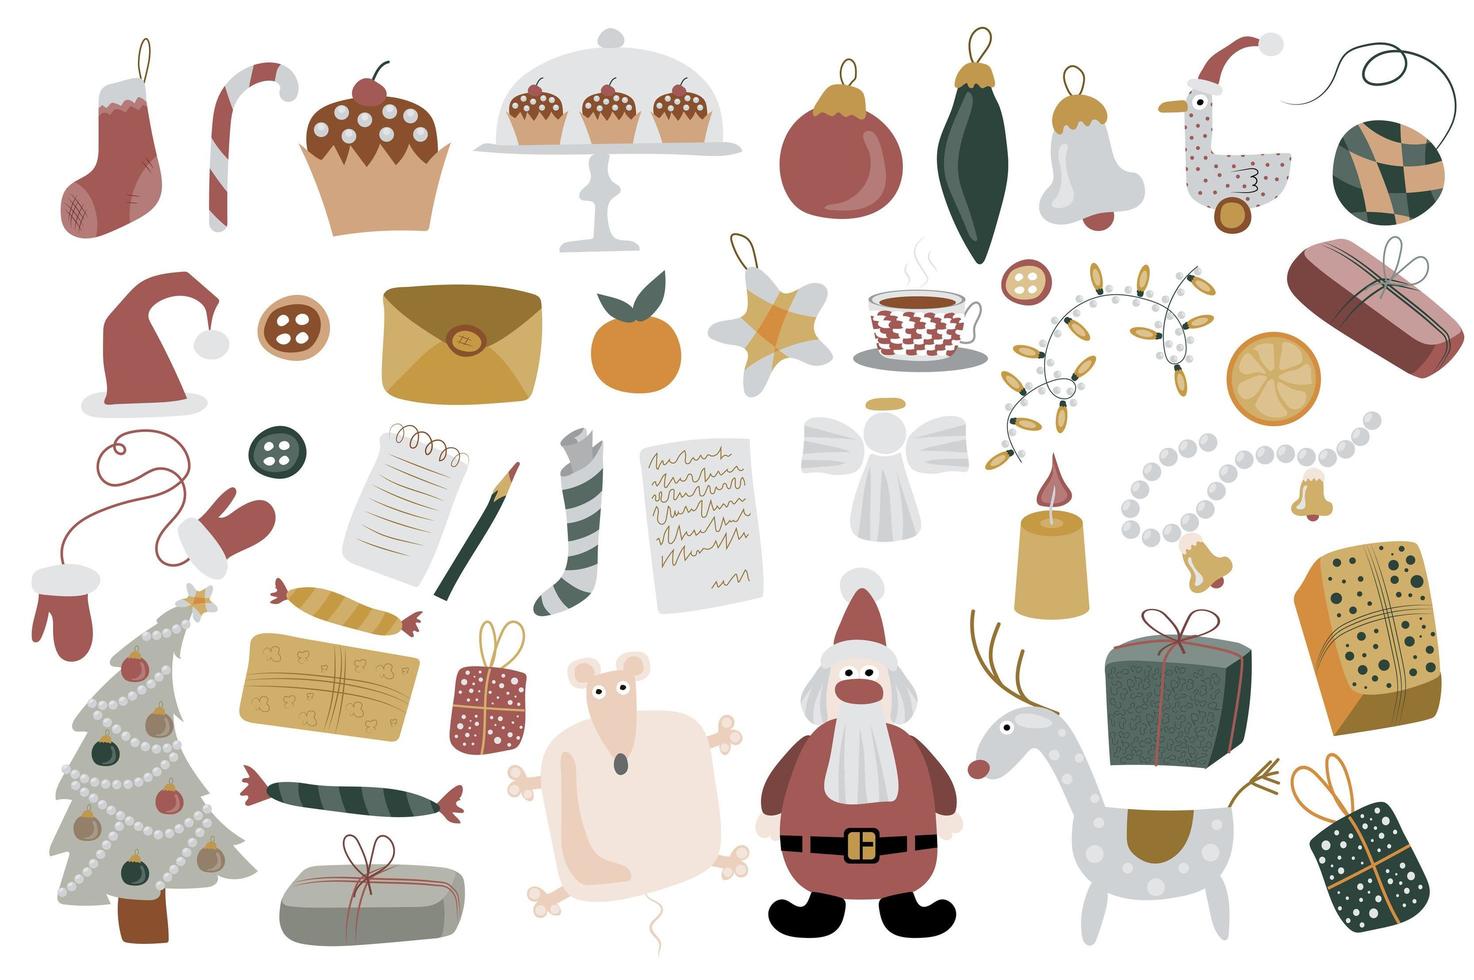 Kerstmis en Nieuwjaar geïsoleerde elementen instellen. bundel vakantiedecor, kerstboom met ballen, speelgoed, geschenken, kerstman en rendieren, brieven. schepper kit voor vectorillustratie in platte cartoon design vector